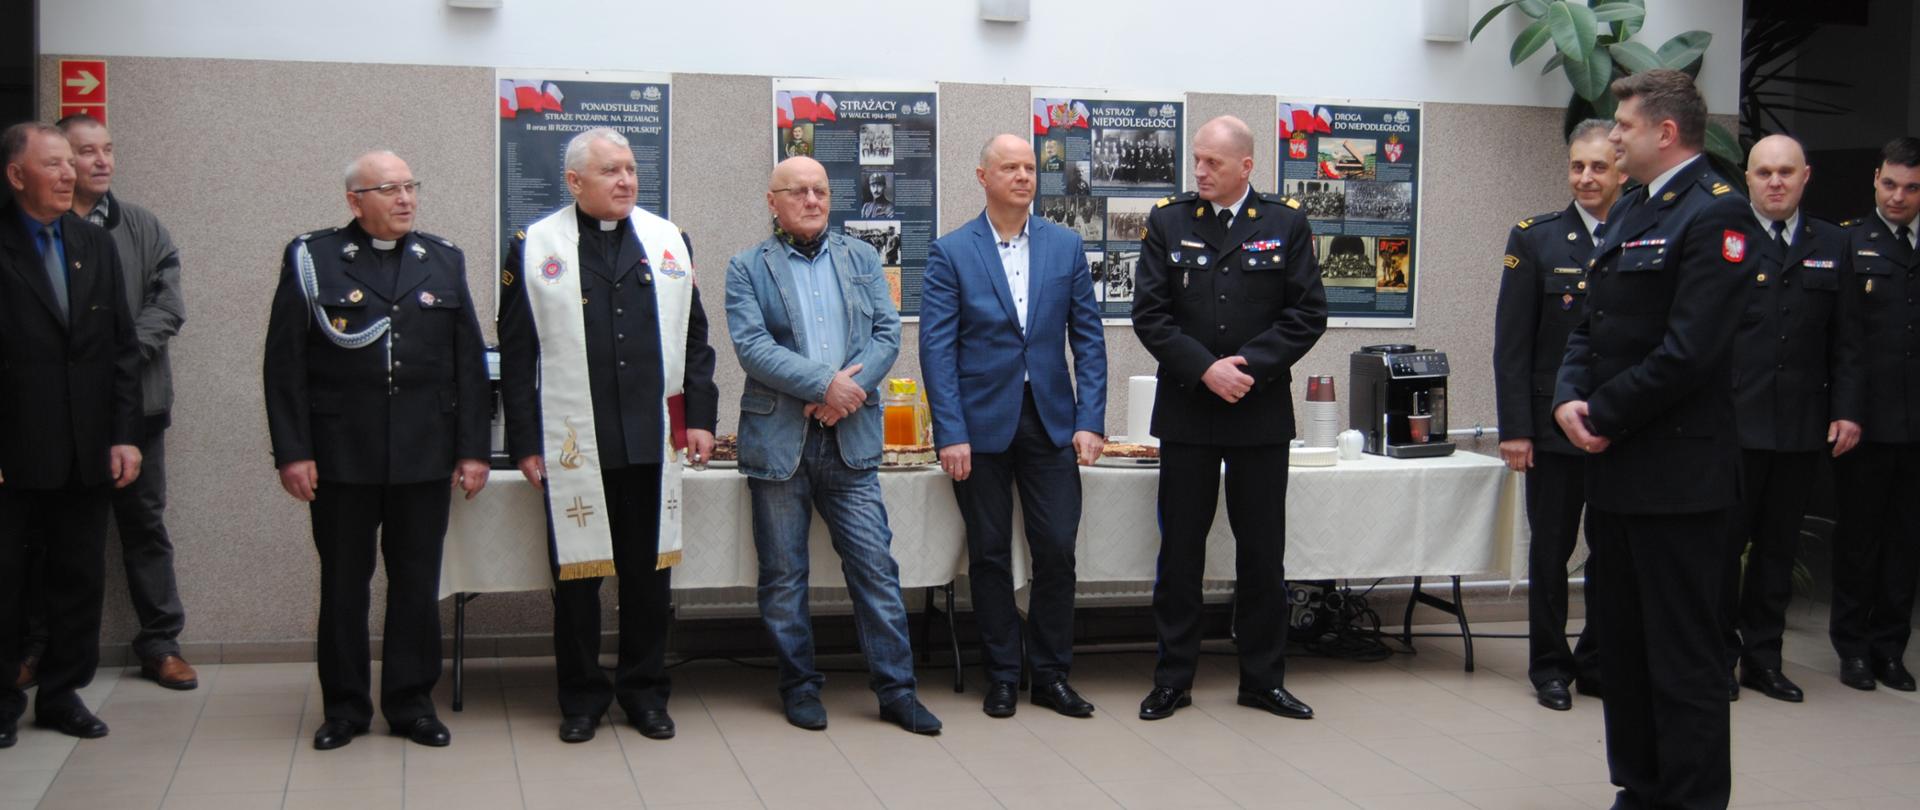 od lewej ks. kapelan OSP, ks. Kapelan PSP, były komendant Józef Chmielewski, były komendant Wojciech Siergiej, zachodniopomorski komendant wojewódzki PSP, komendant powiatowy PSP w Stargardzie